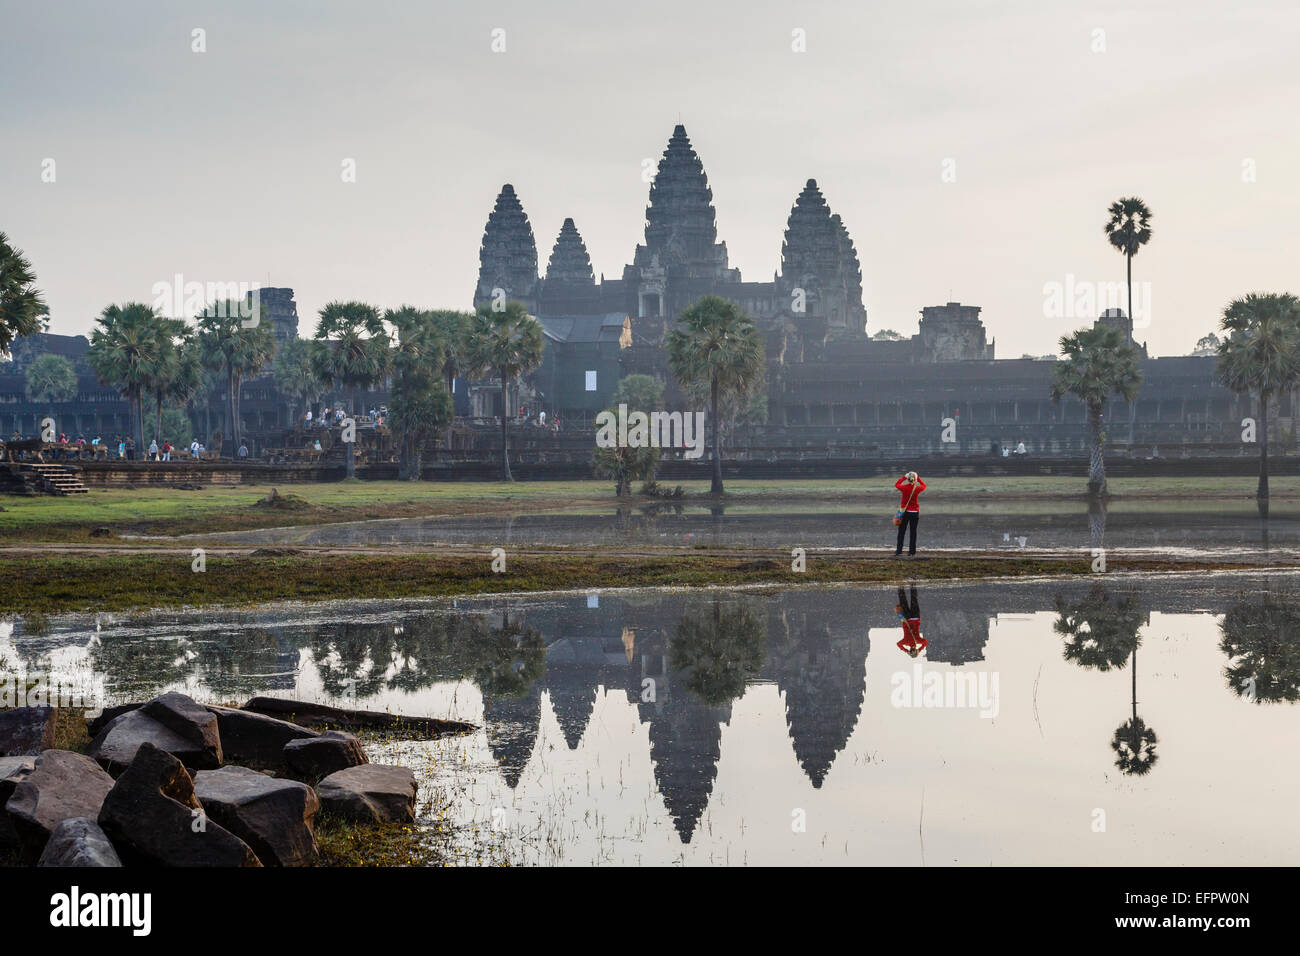 Angkor Wat temple, Angkor, Cambodia. Stock Photo